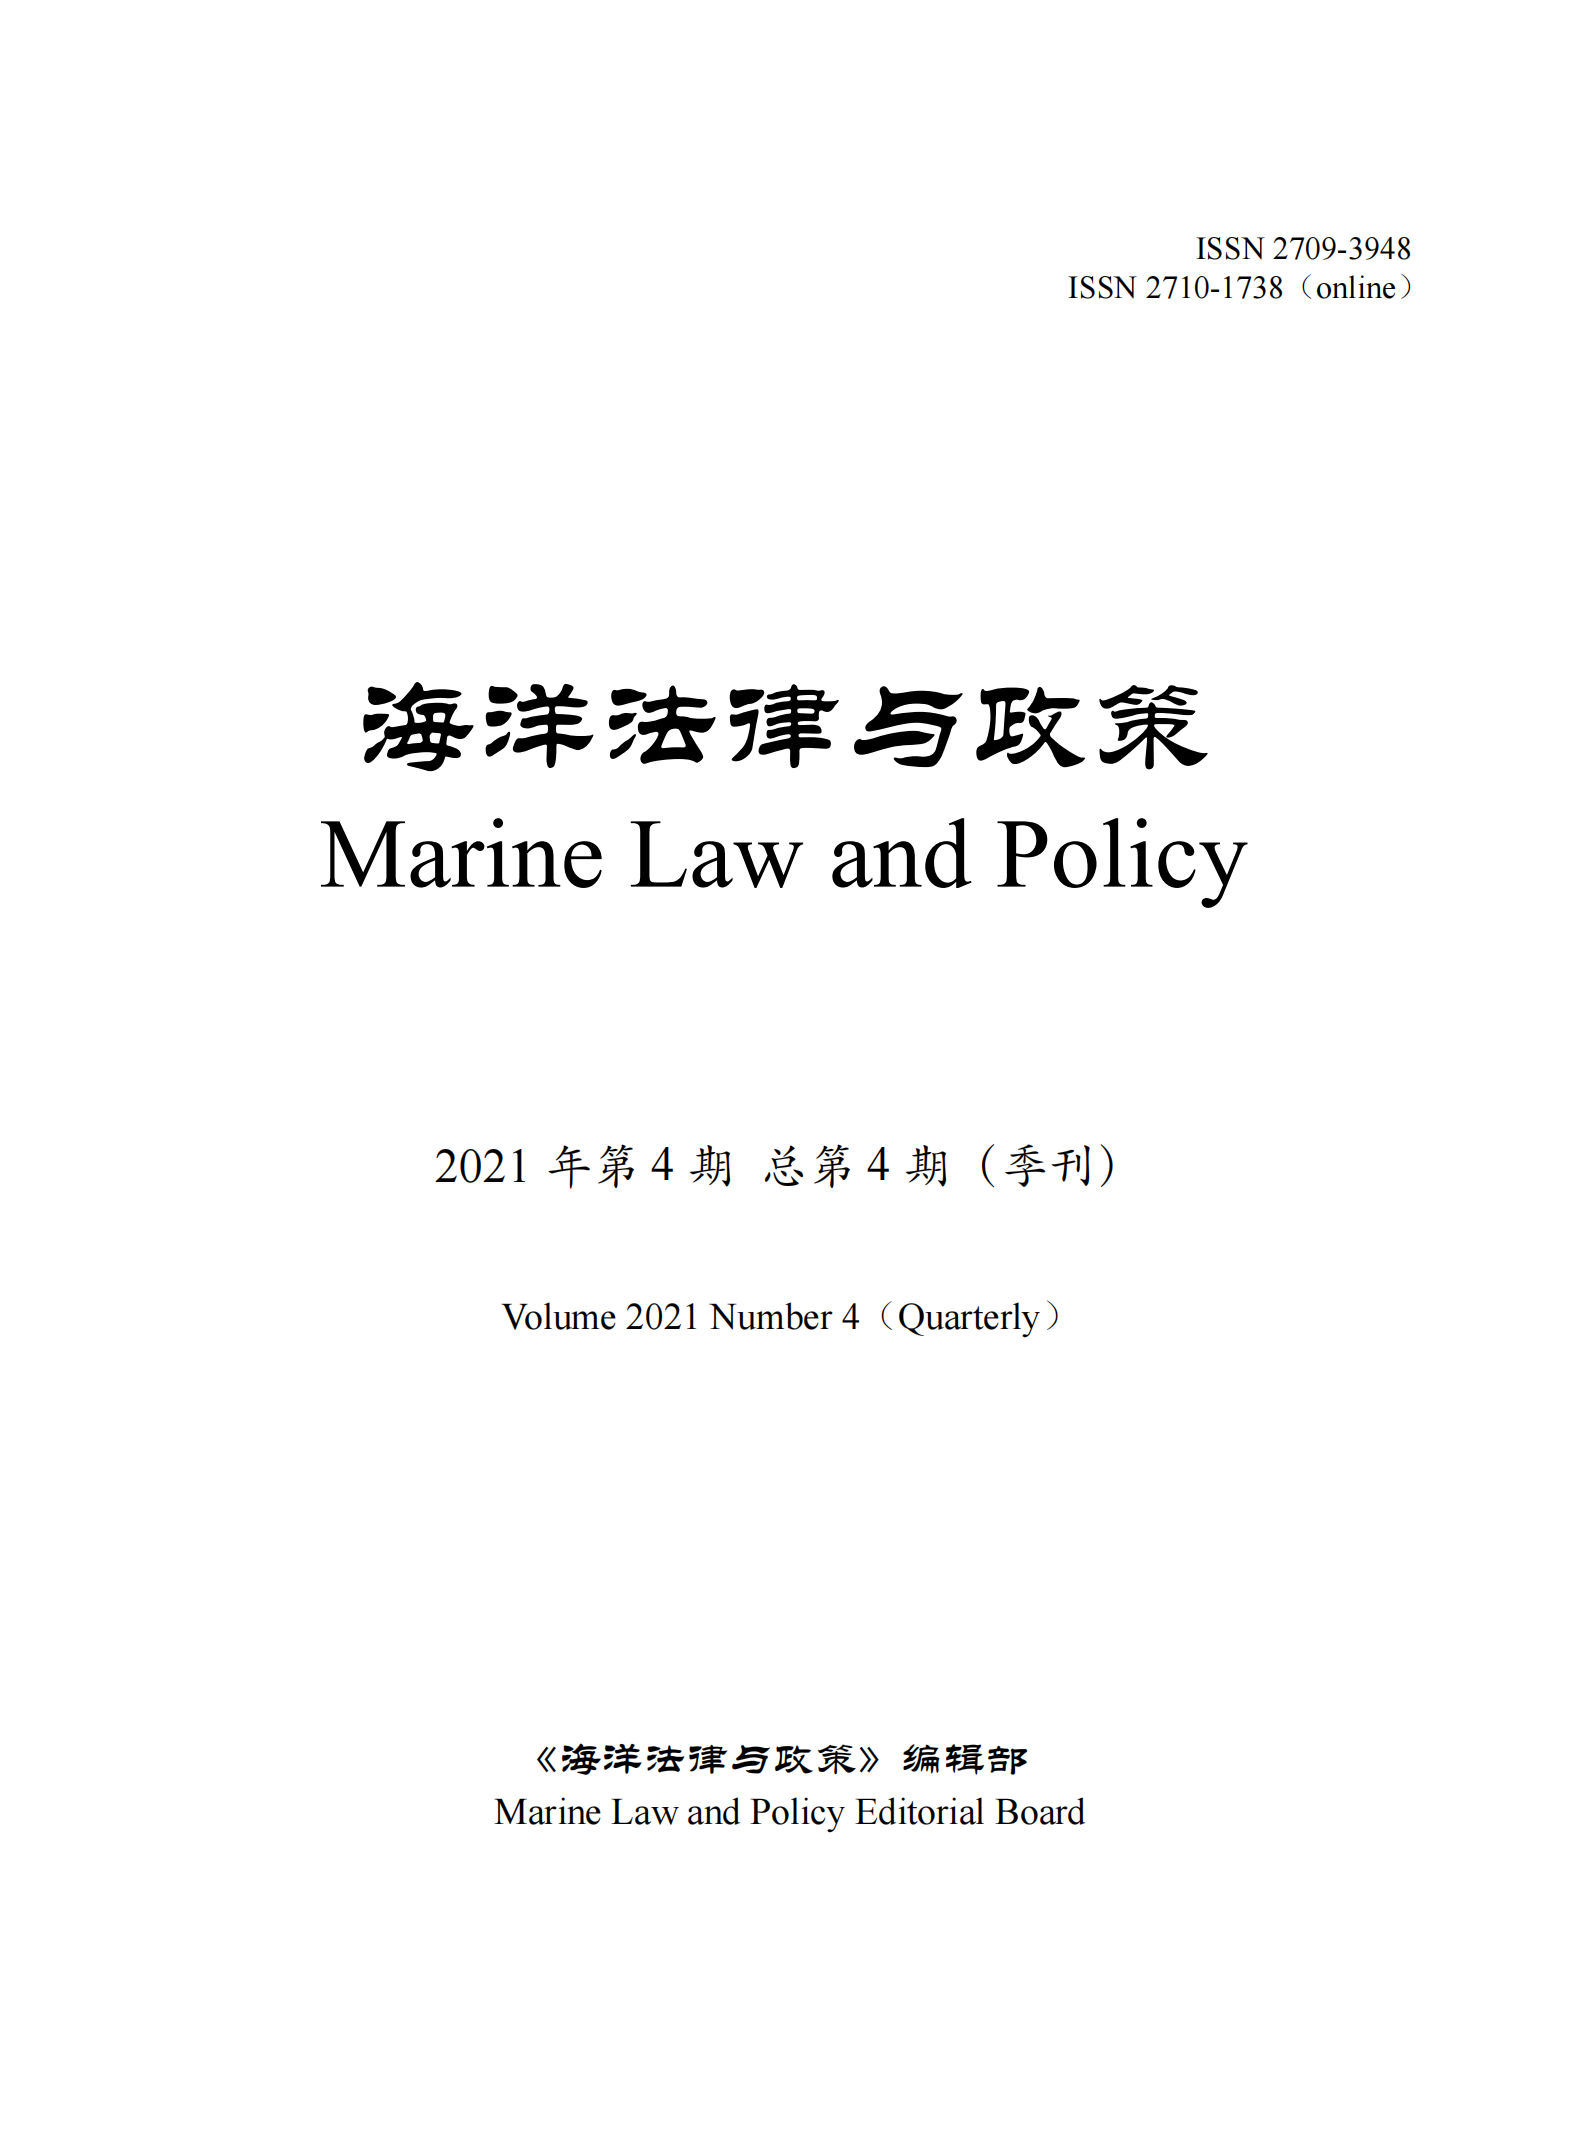 提取自《海洋法律与政策》总第4期.png